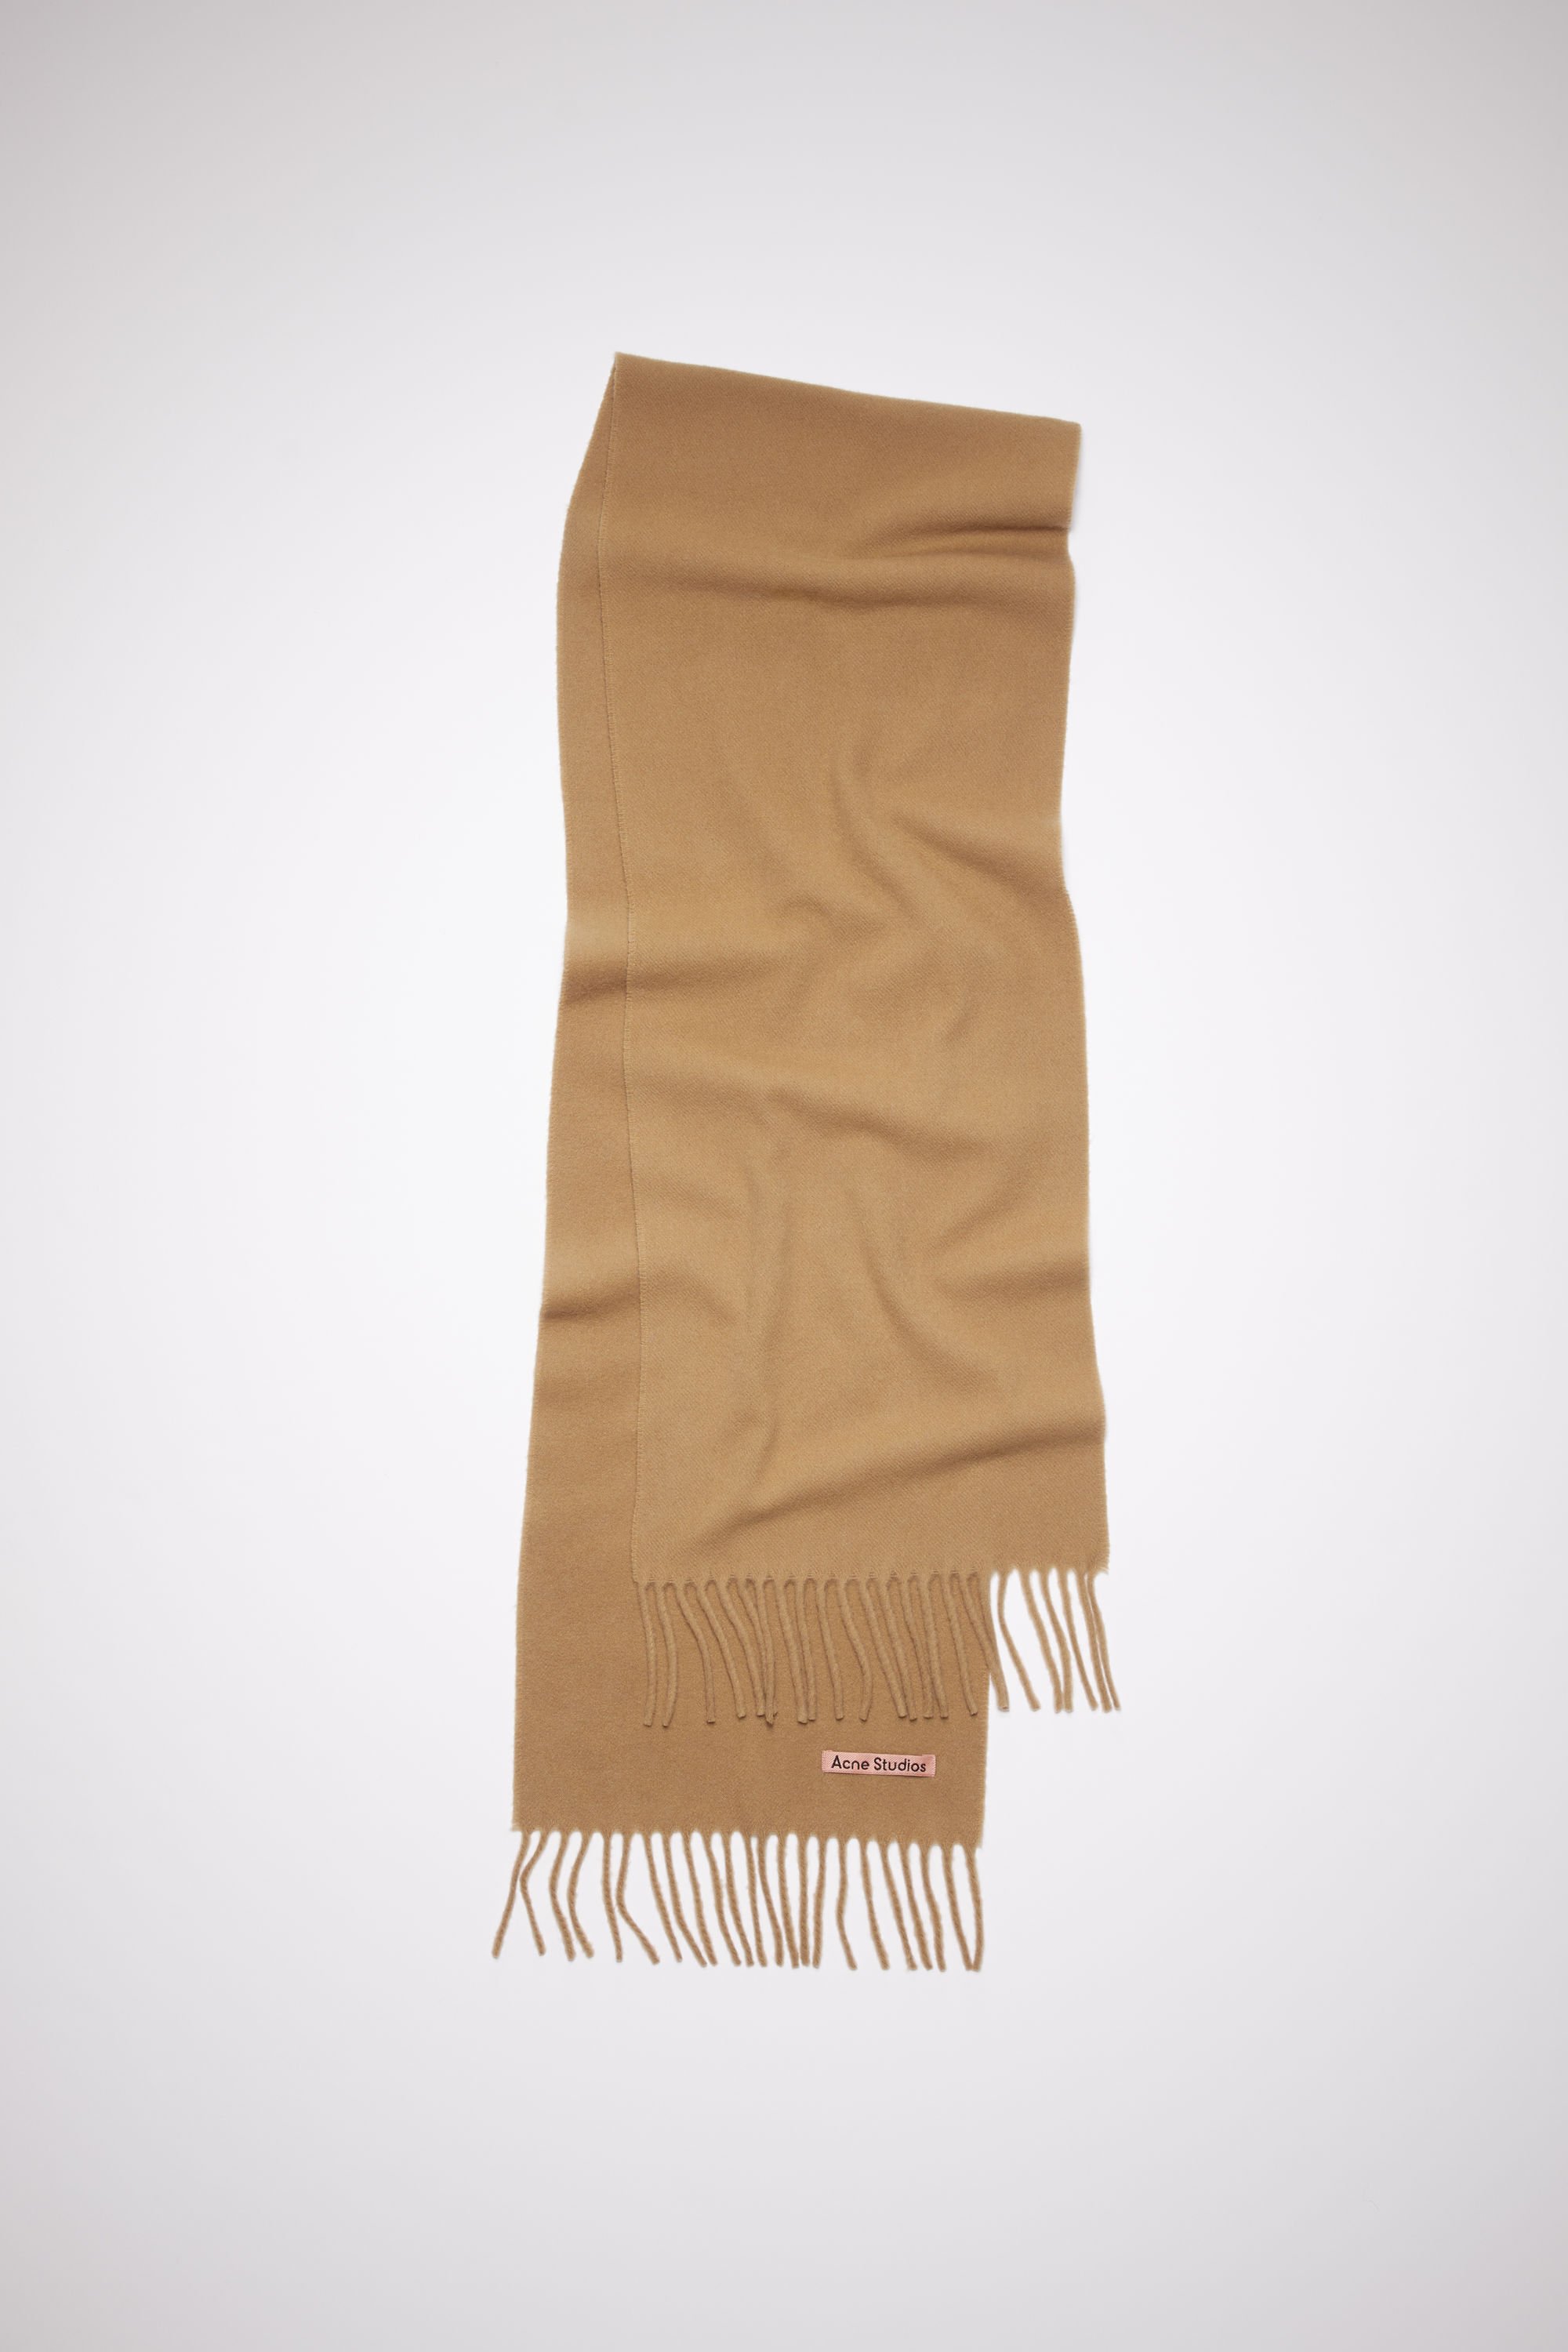 scarf brown.jpg